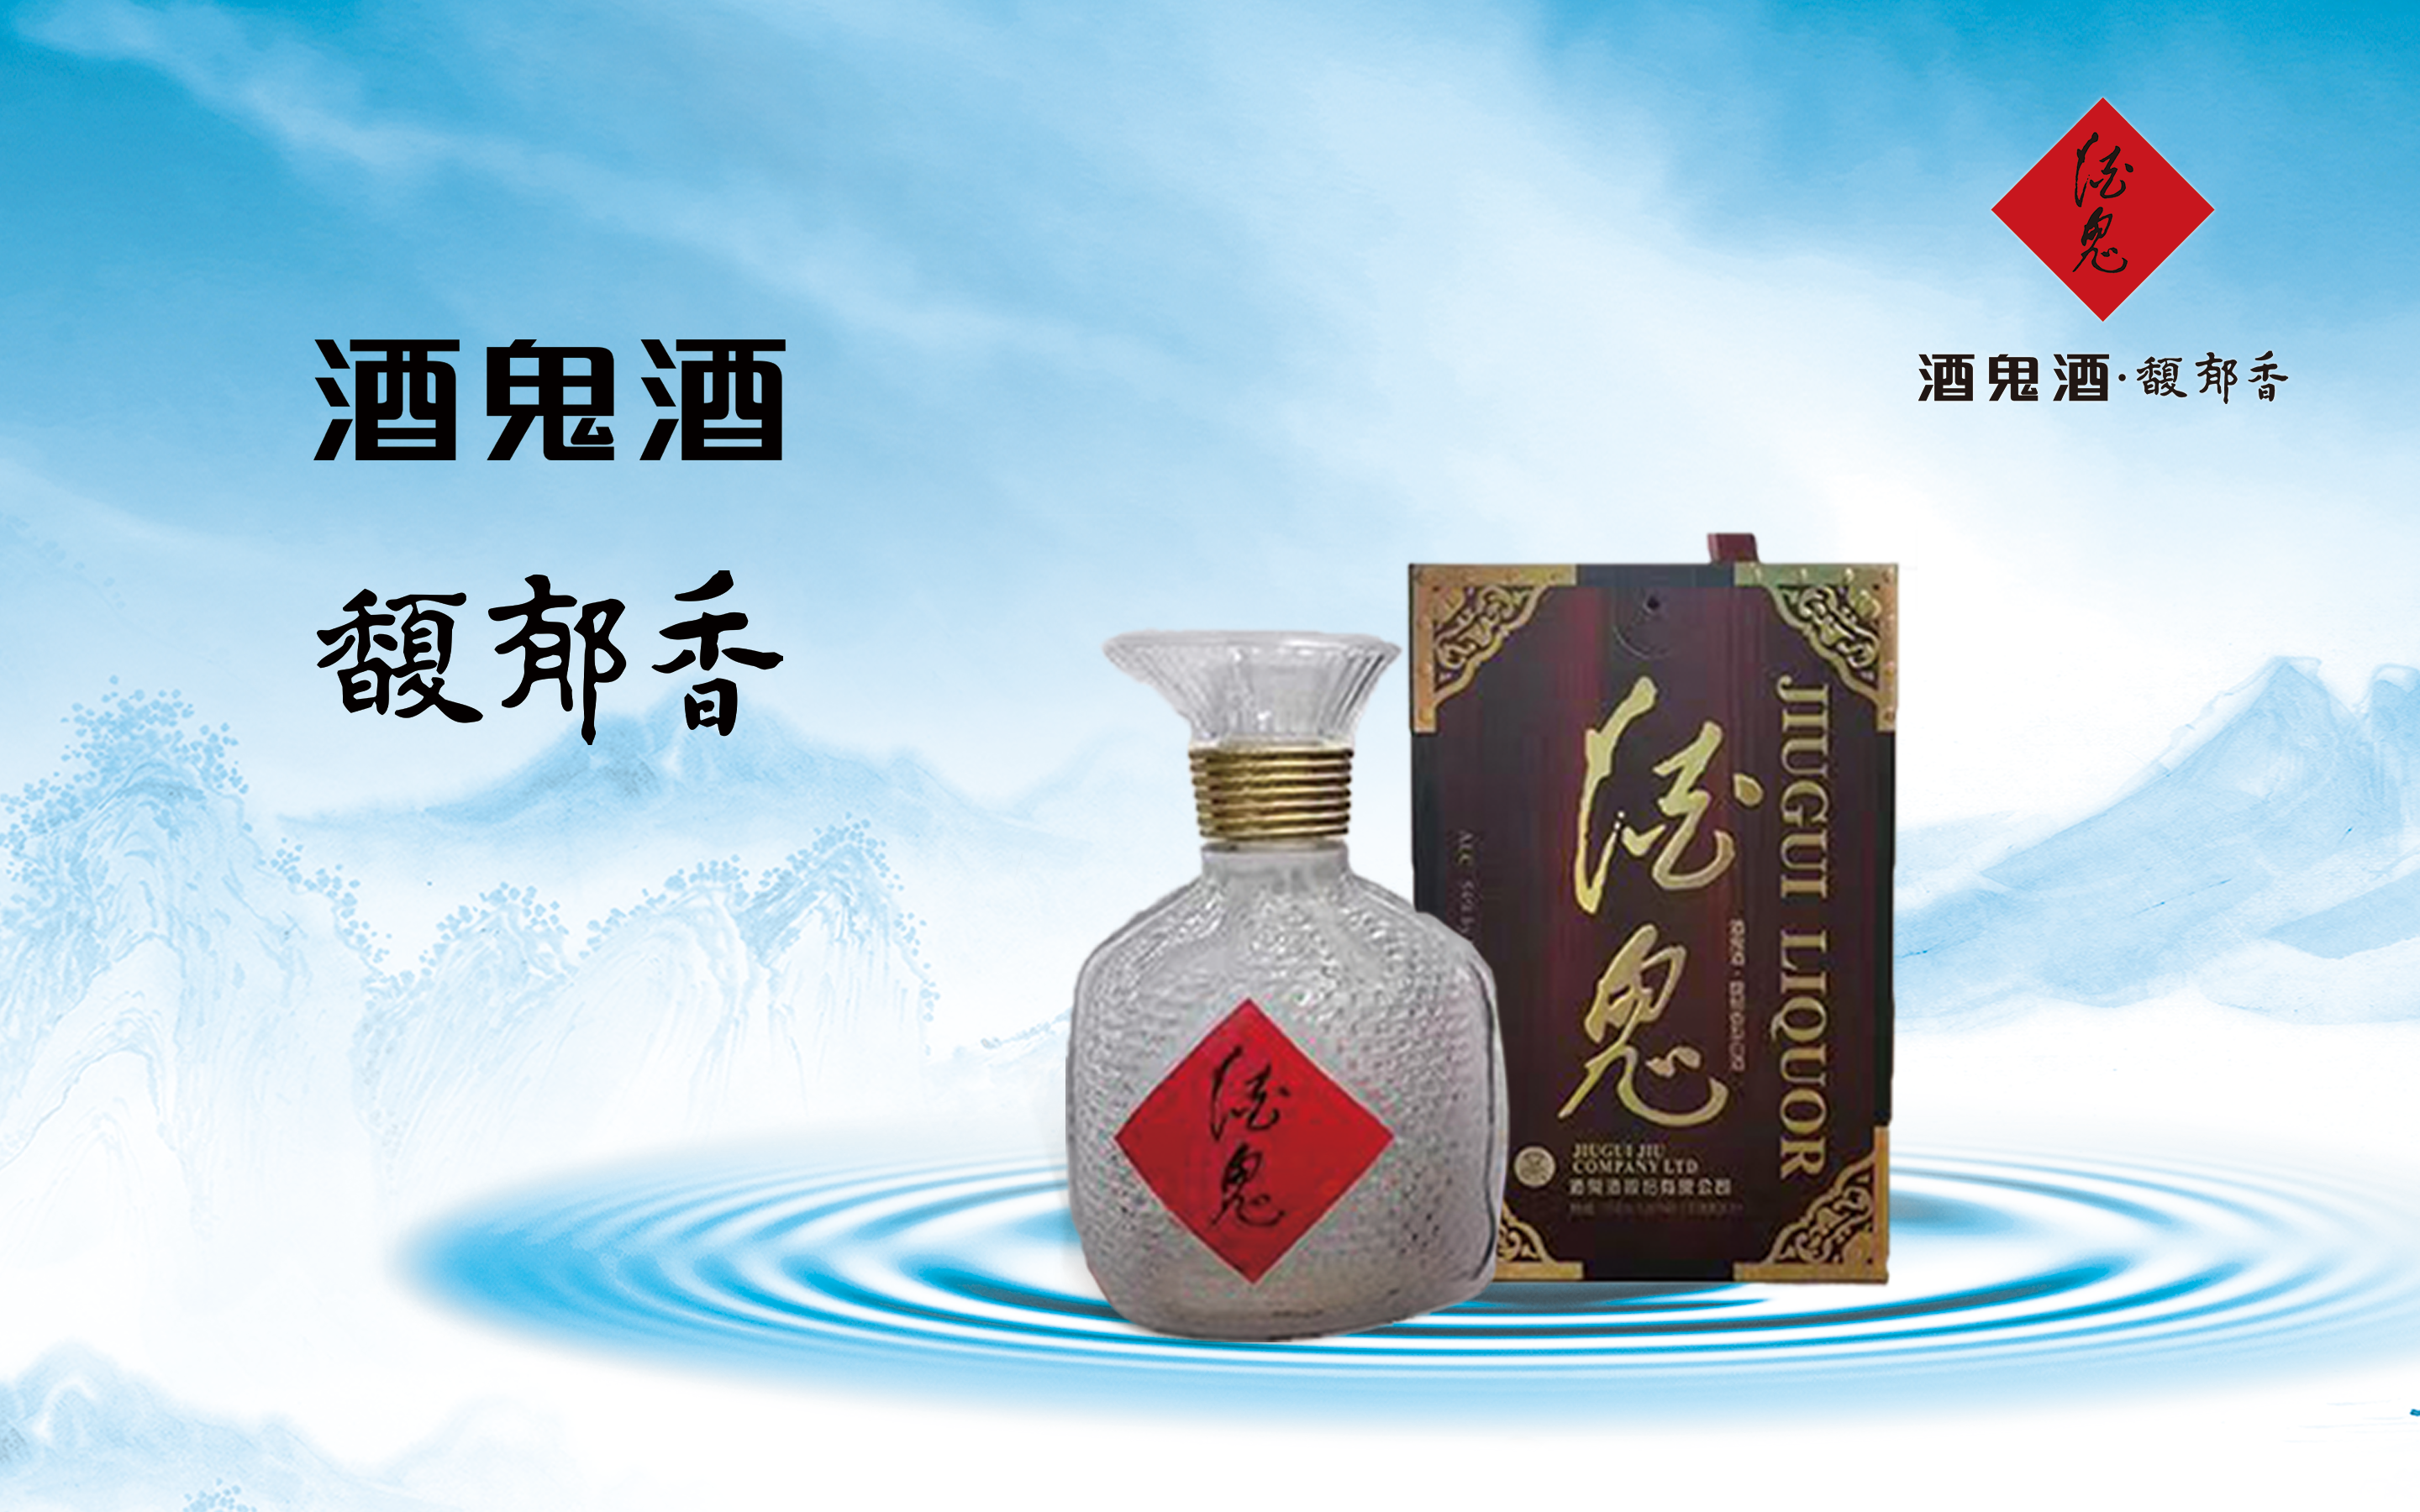 湘西的文化名片之一——馥郁香型酒鬼酒- Sinocan Supply Inc.